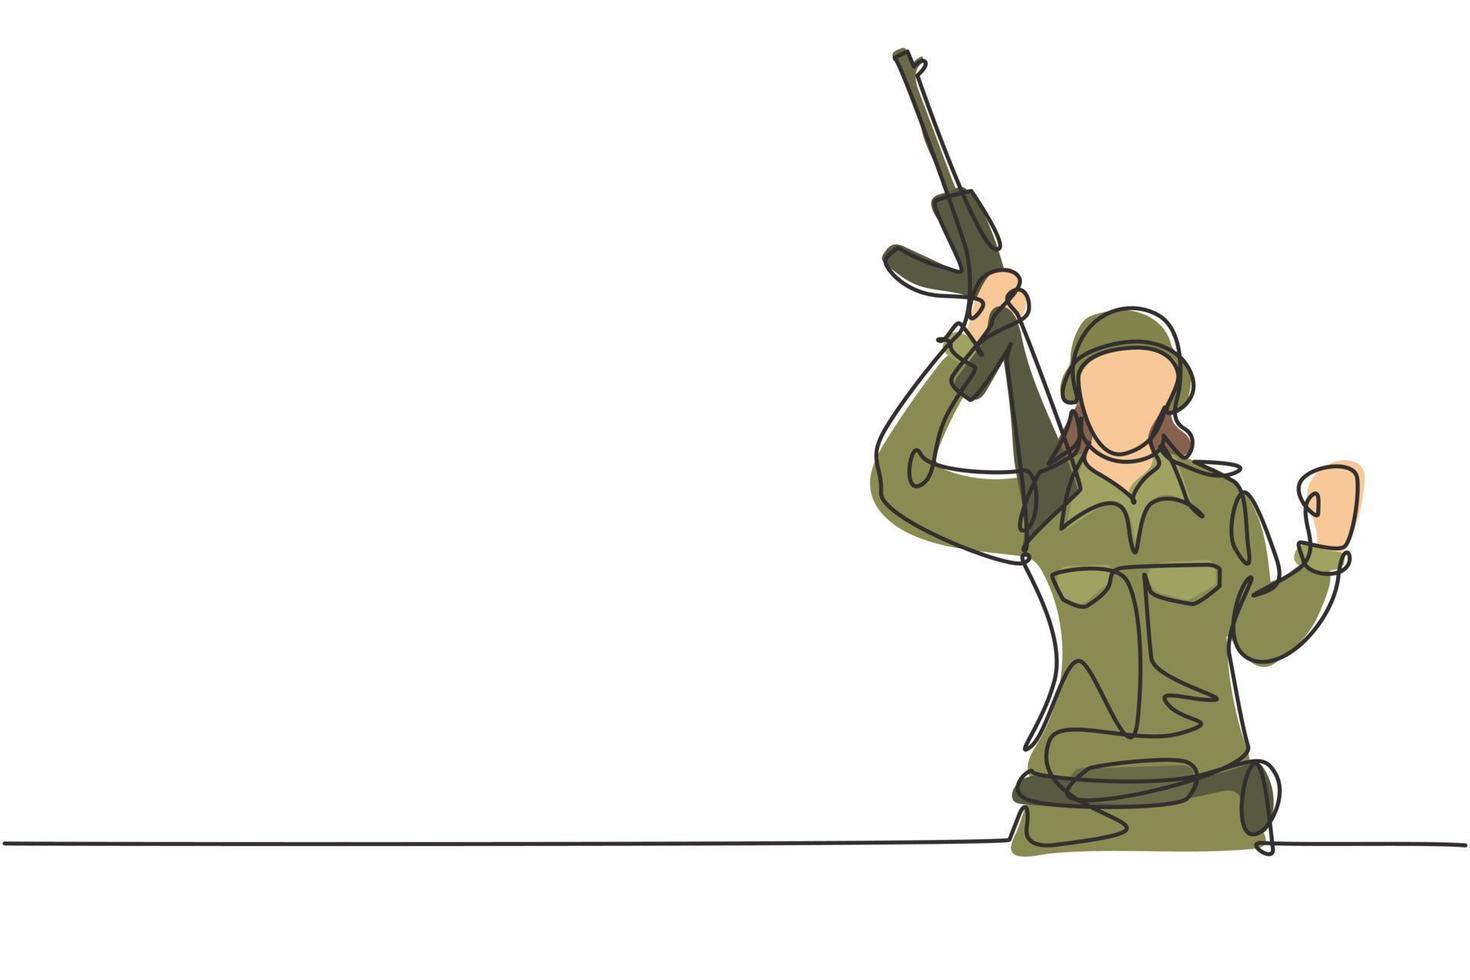 Una sola mujer soldado de dibujo de línea continua con gesto de celebración, arma y uniforme completo está lista para defender el país en el campo de batalla contra el enemigo. Ilustración de vector de diseño gráfico de dibujo de una línea